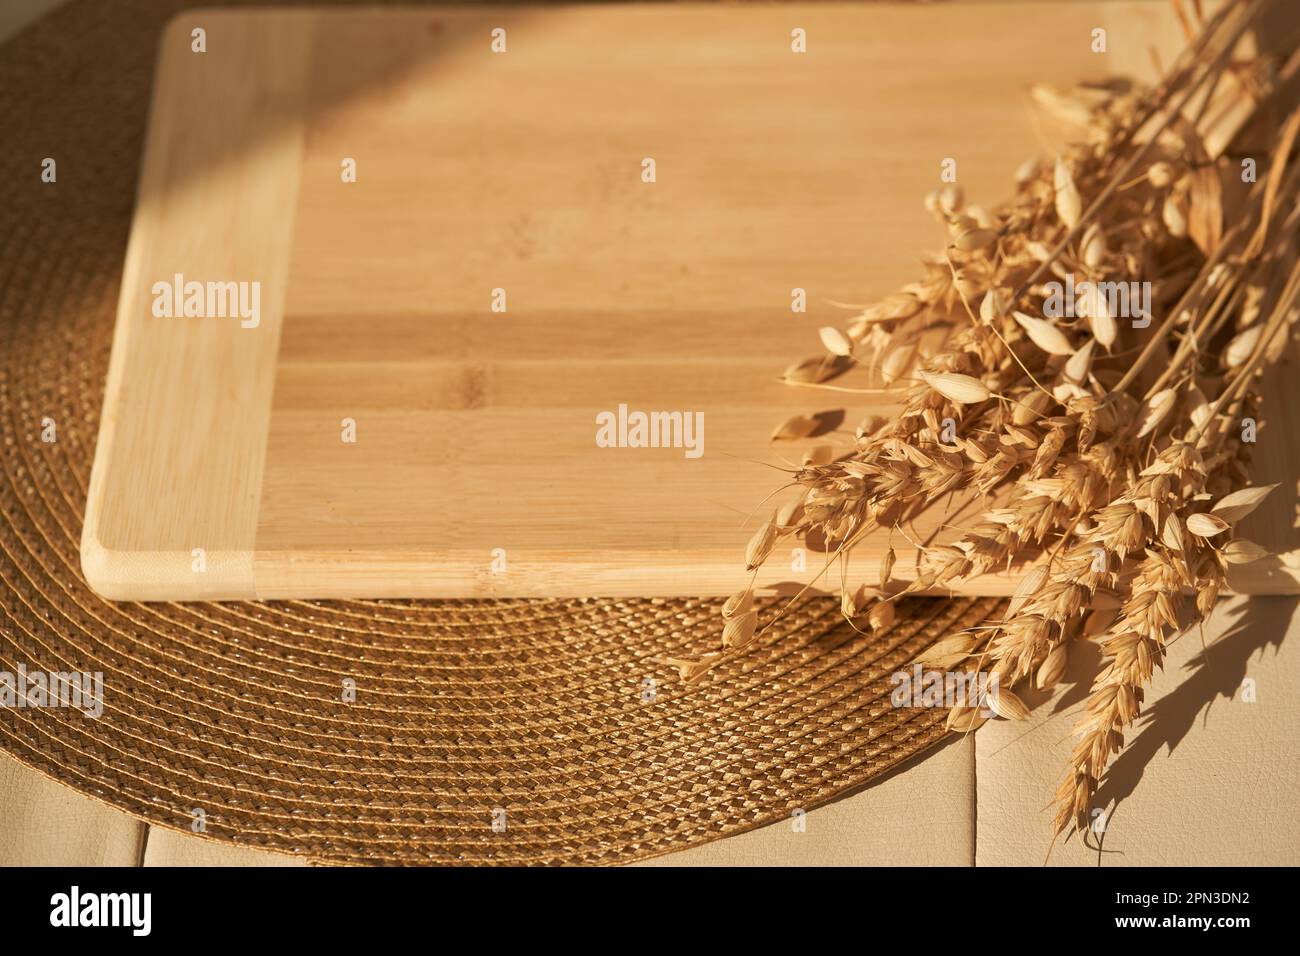 Ein leeres Schneidebrett liegt auf einer Serviette und in der Sonne, neben Weizen- und Roggenkörnern, einem Layout für Ihr Produkt, einem Podium für Ihr Brot oder Backen mit Kopierraum. Hochwertiges Foto Stockfoto